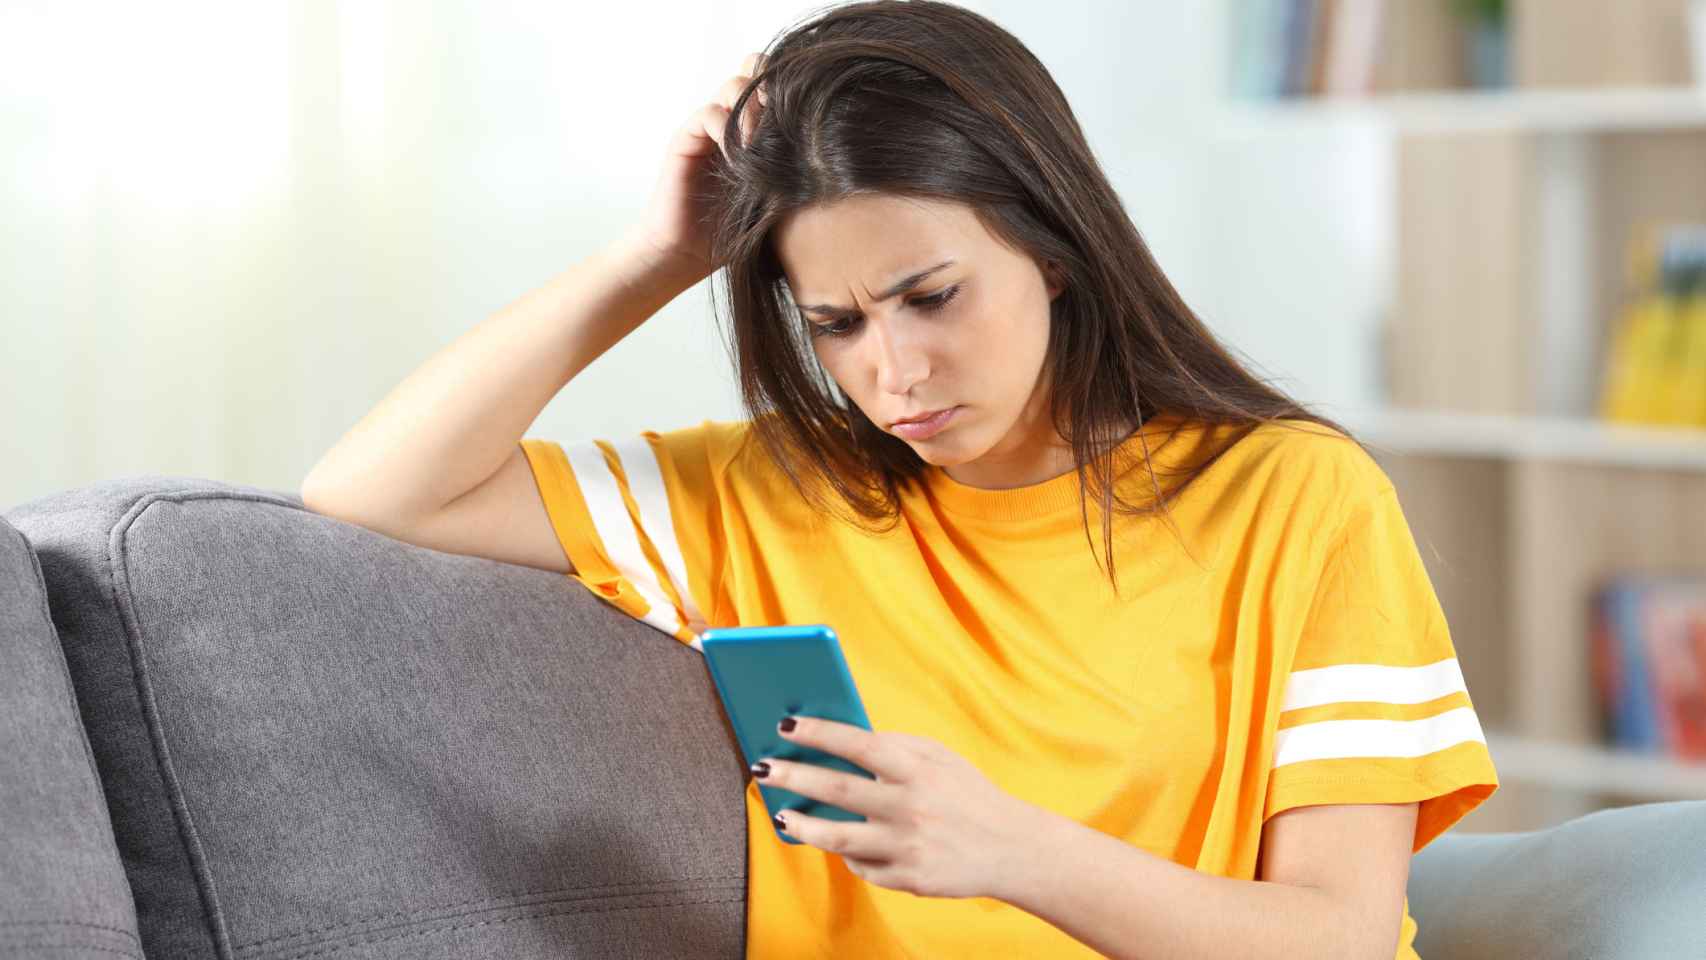 Adolescente preocupada leyendo su smartphone. Foto: iStock.